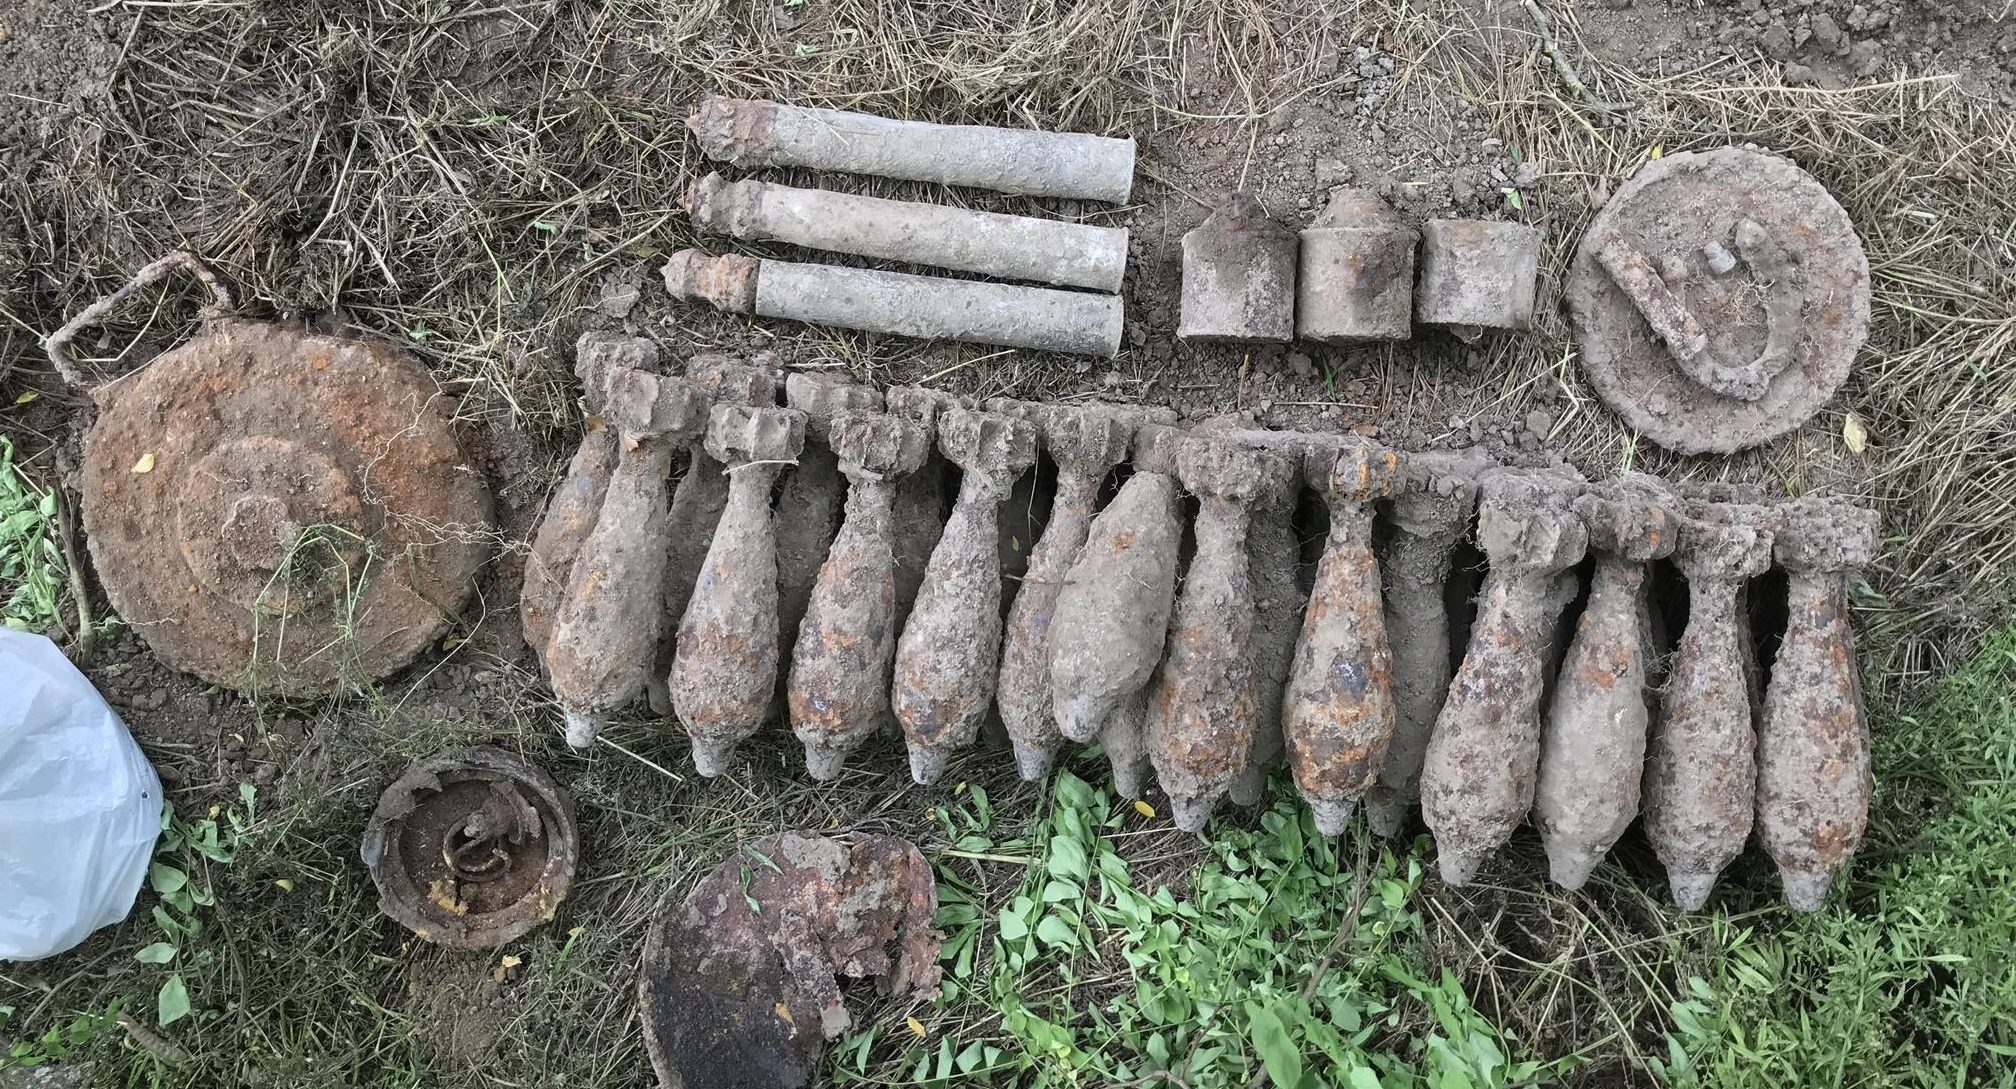 Tányéraknát, lőszereket és kézigránátokat találtak Balatonfőkajáron